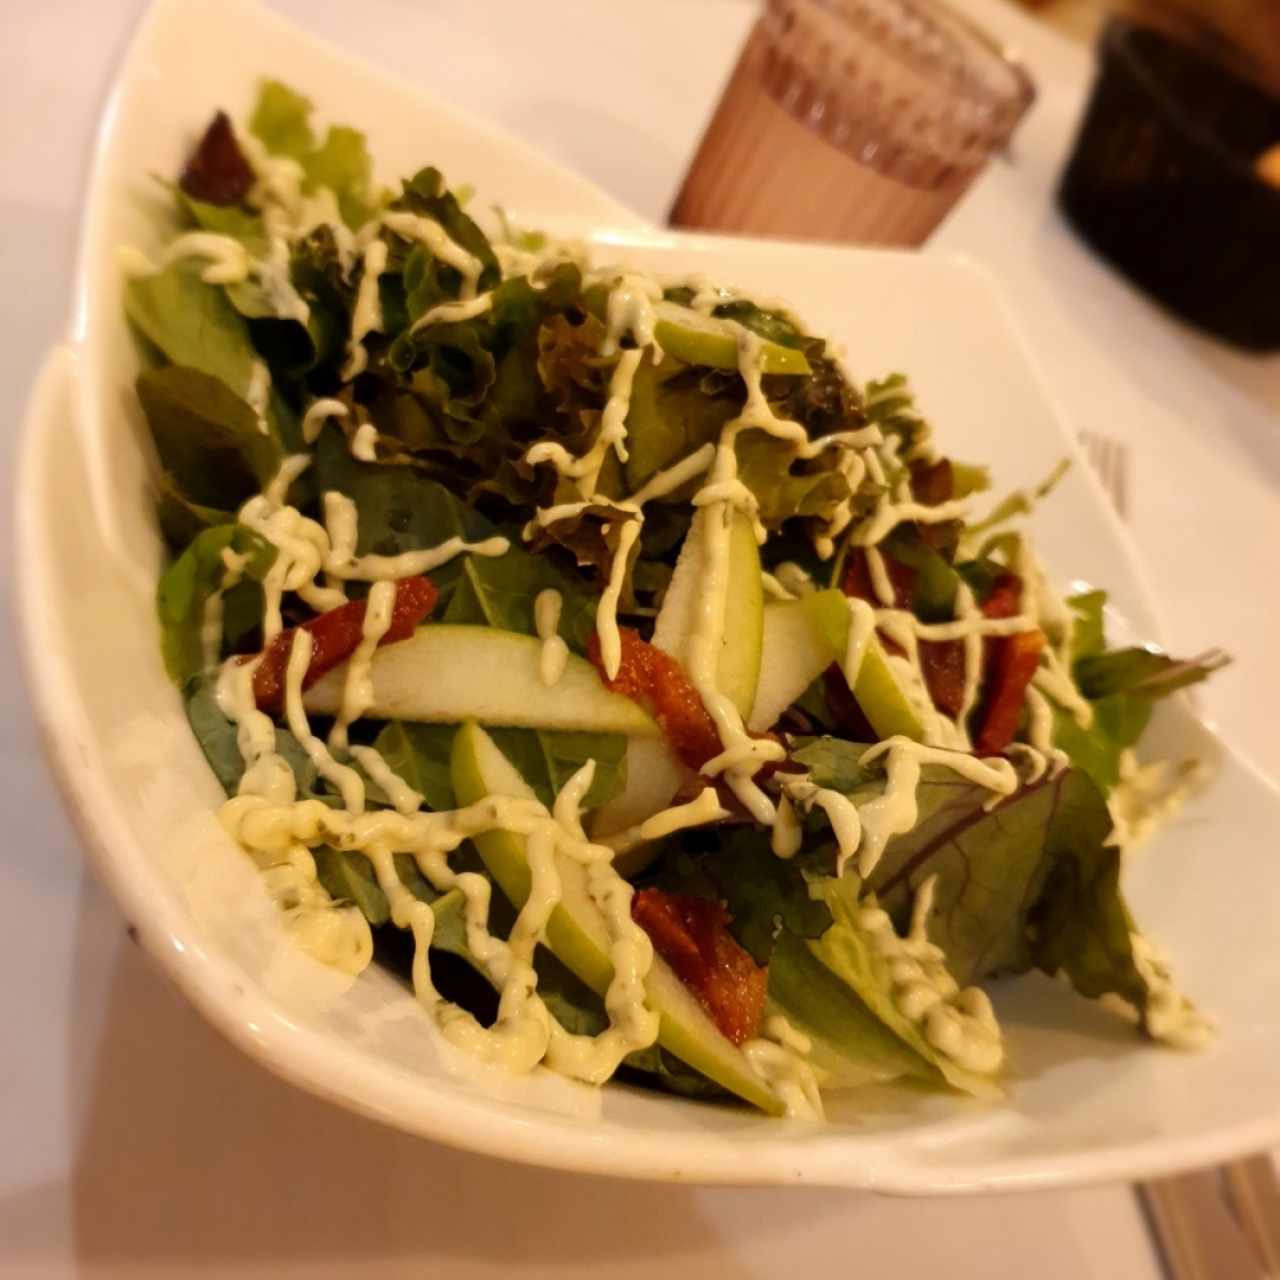 Obarrio Salad 